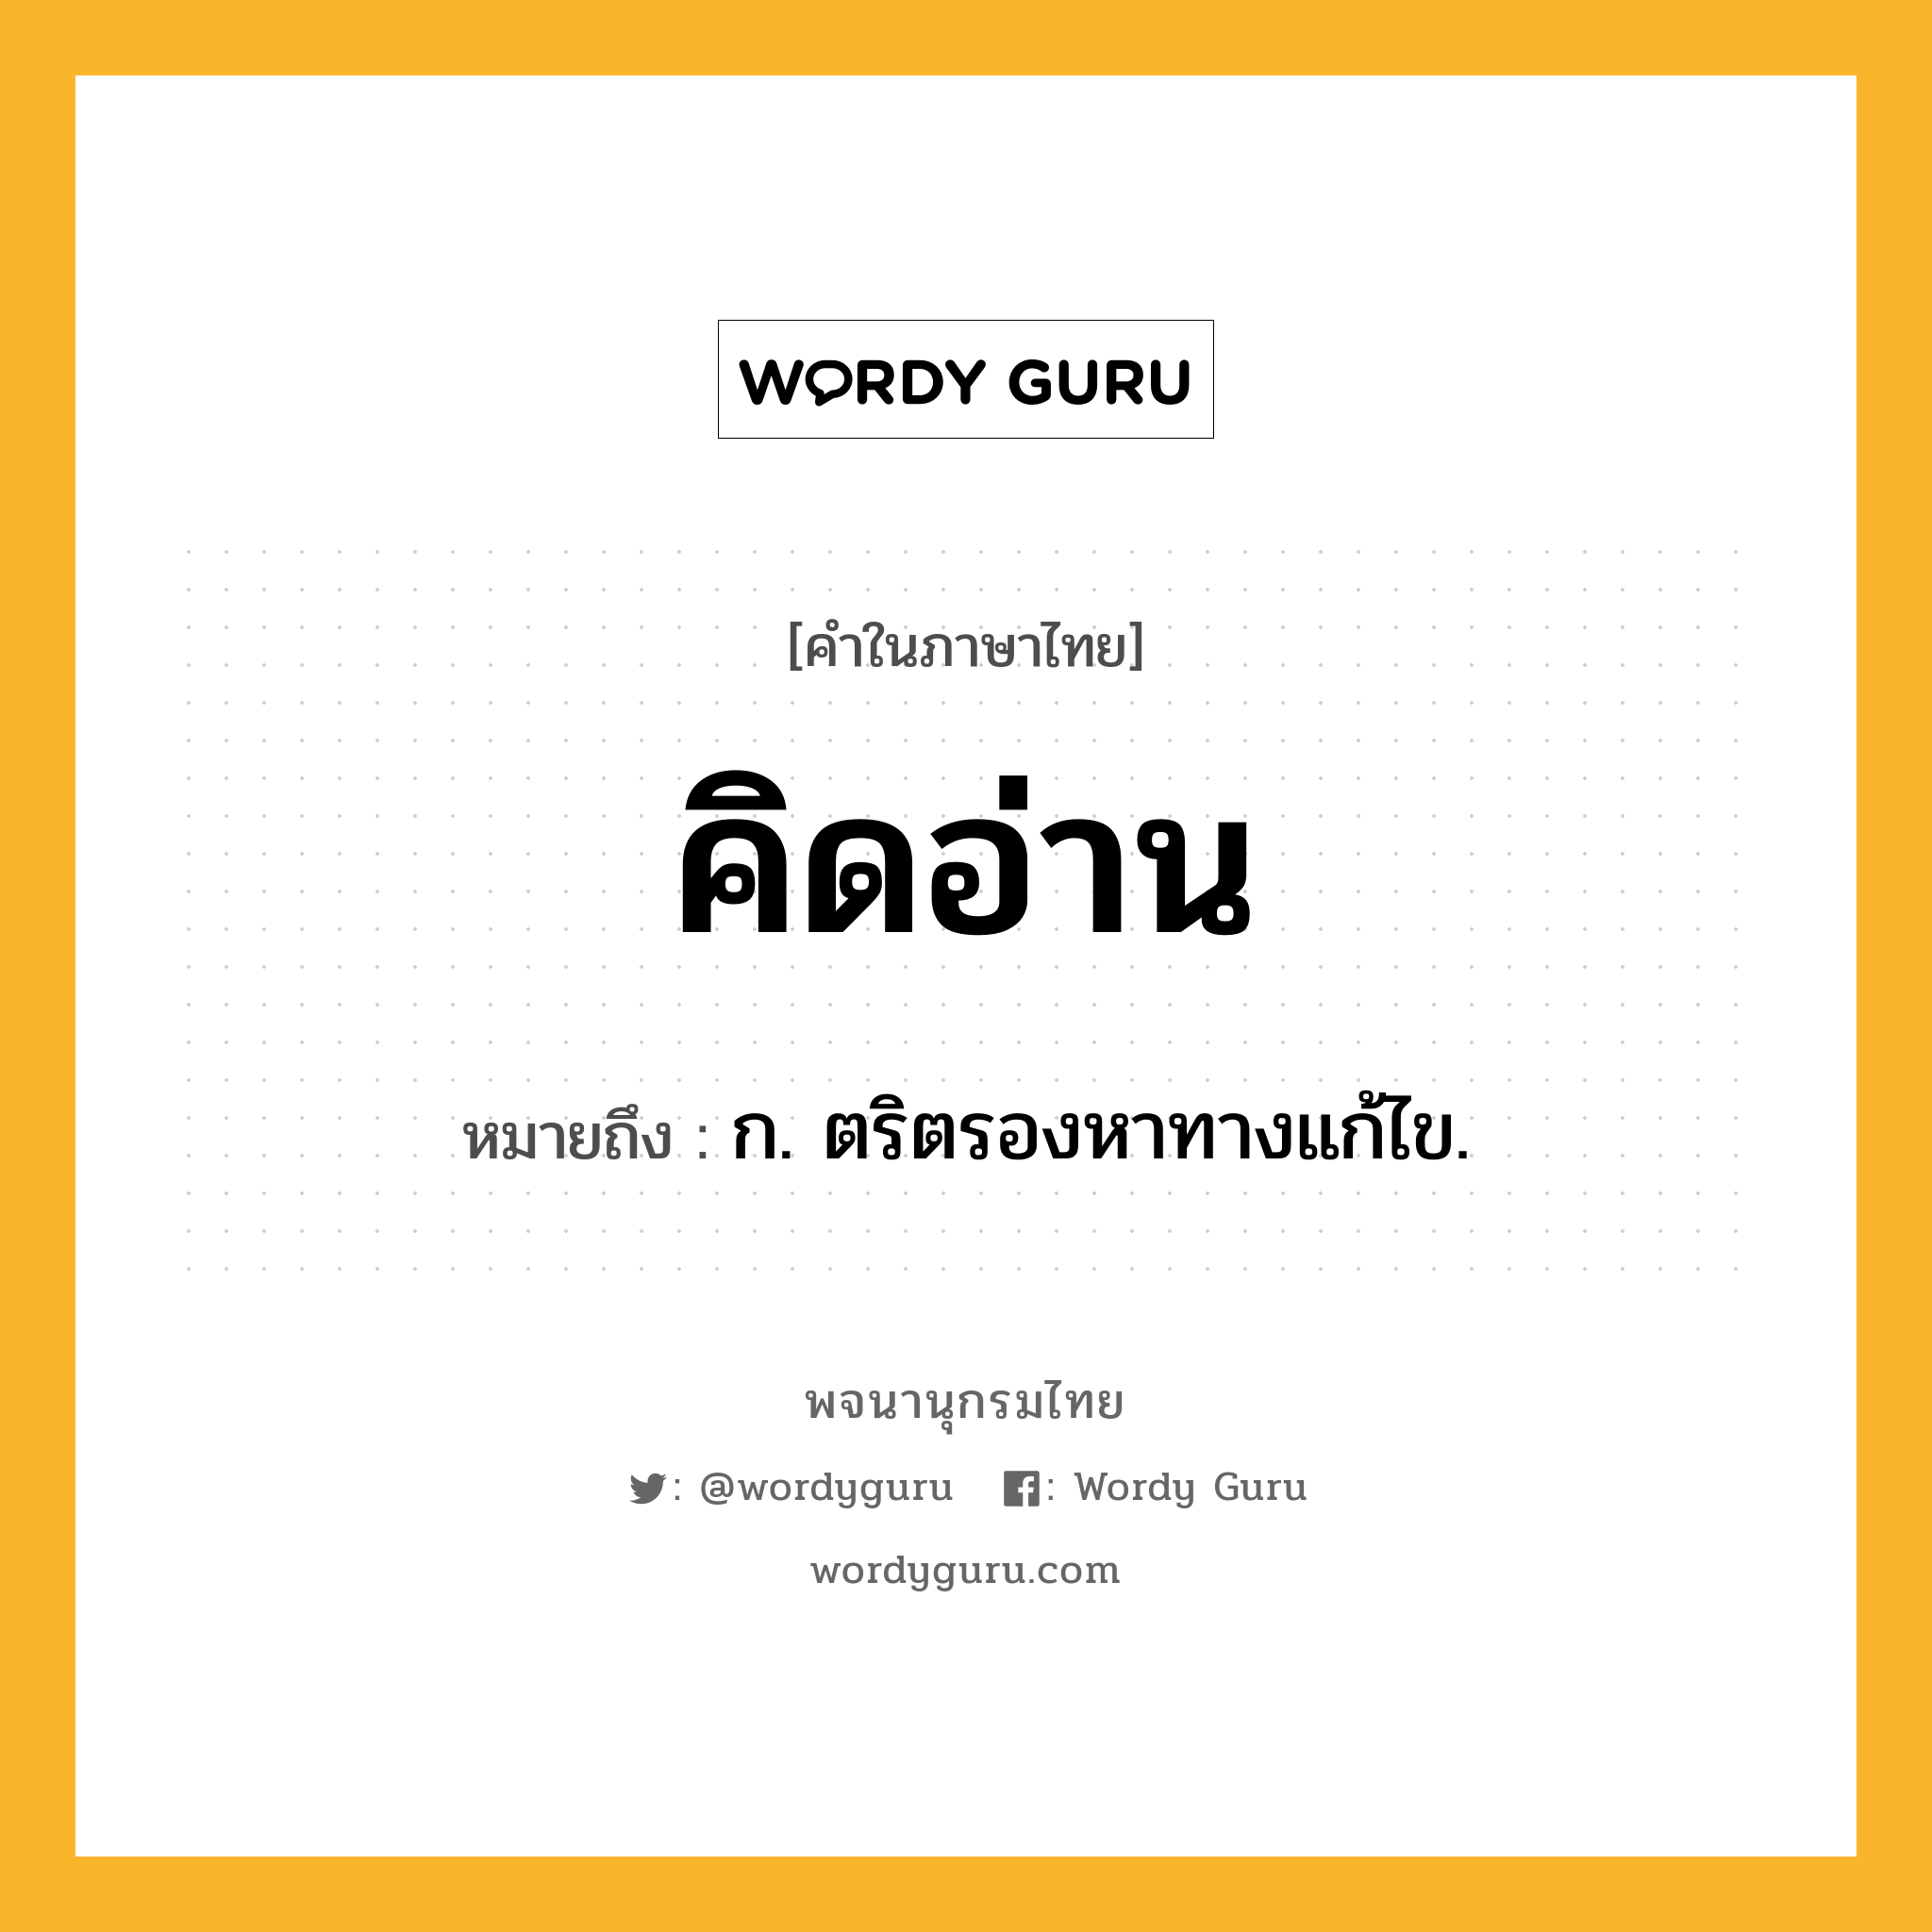 คิดอ่าน ความหมาย หมายถึงอะไร?, คำในภาษาไทย คิดอ่าน หมายถึง ก. ตริตรองหาทางแก้ไข.